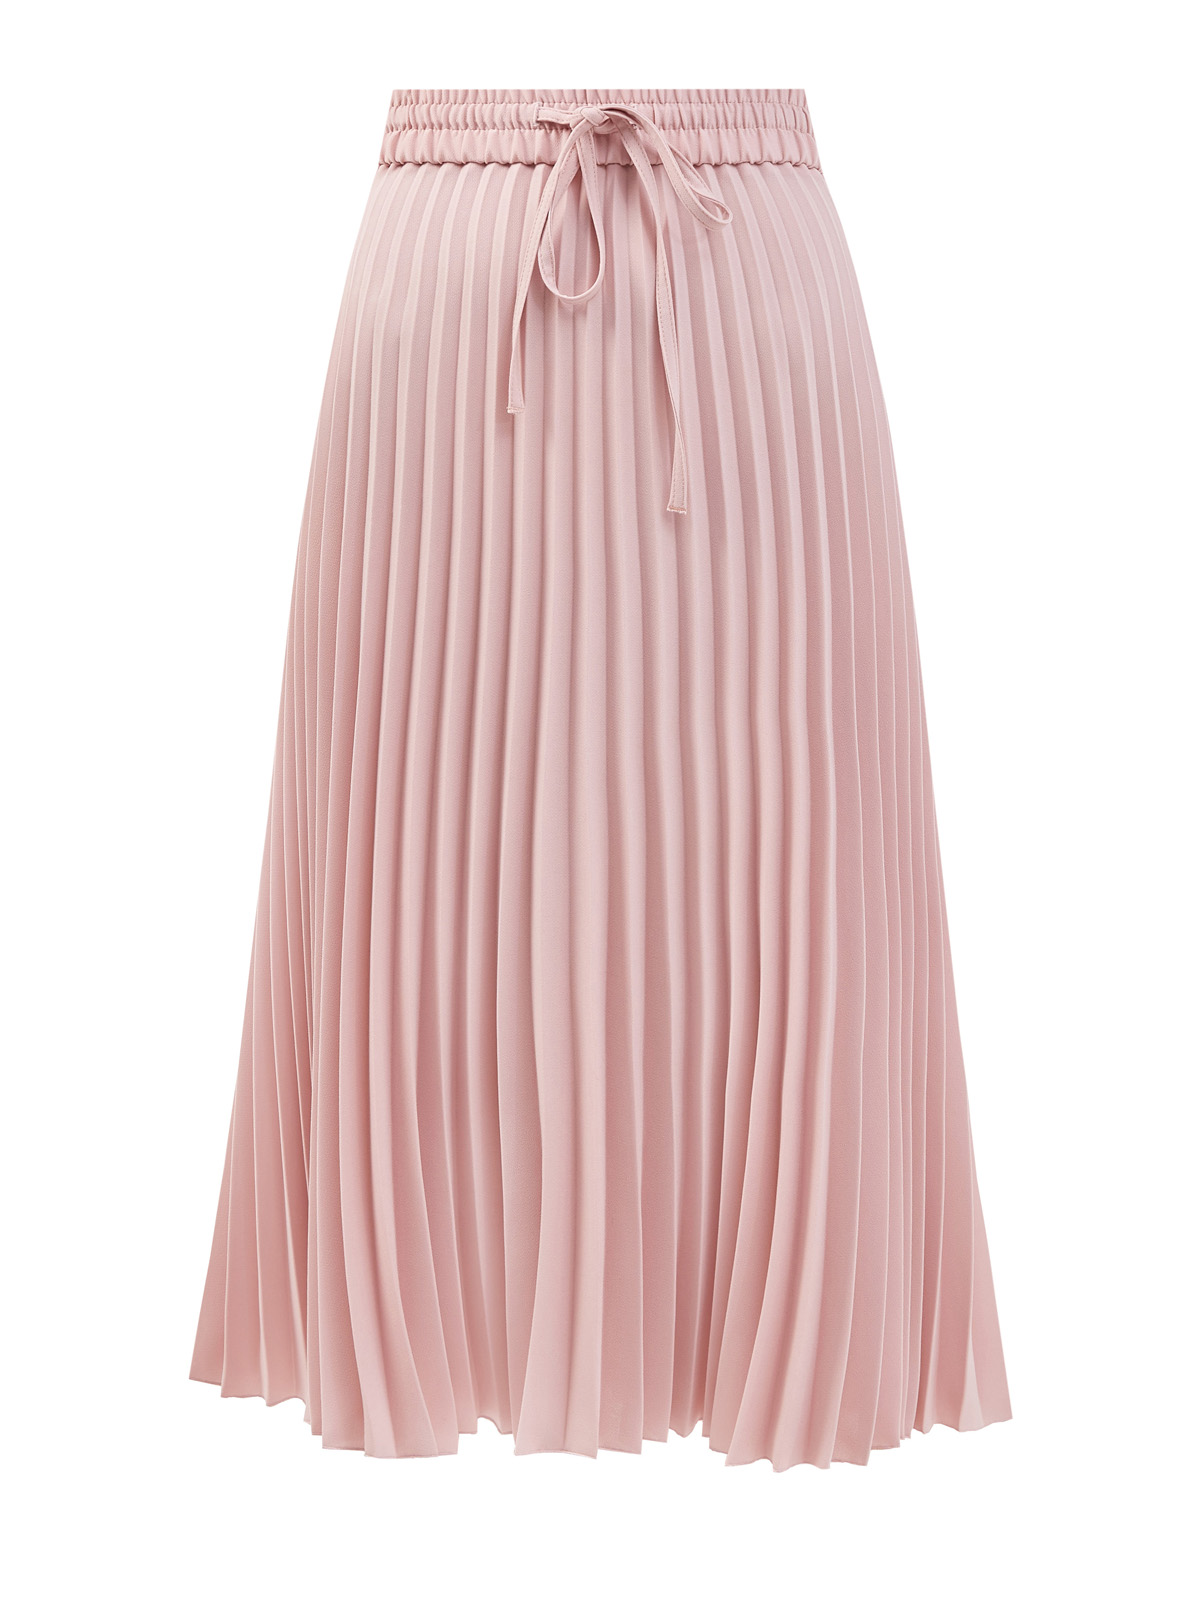 Свободная юбка-плиссе из струящегося крепа REDVALENTINO, цвет розовый, размер M;L;S - фото 1